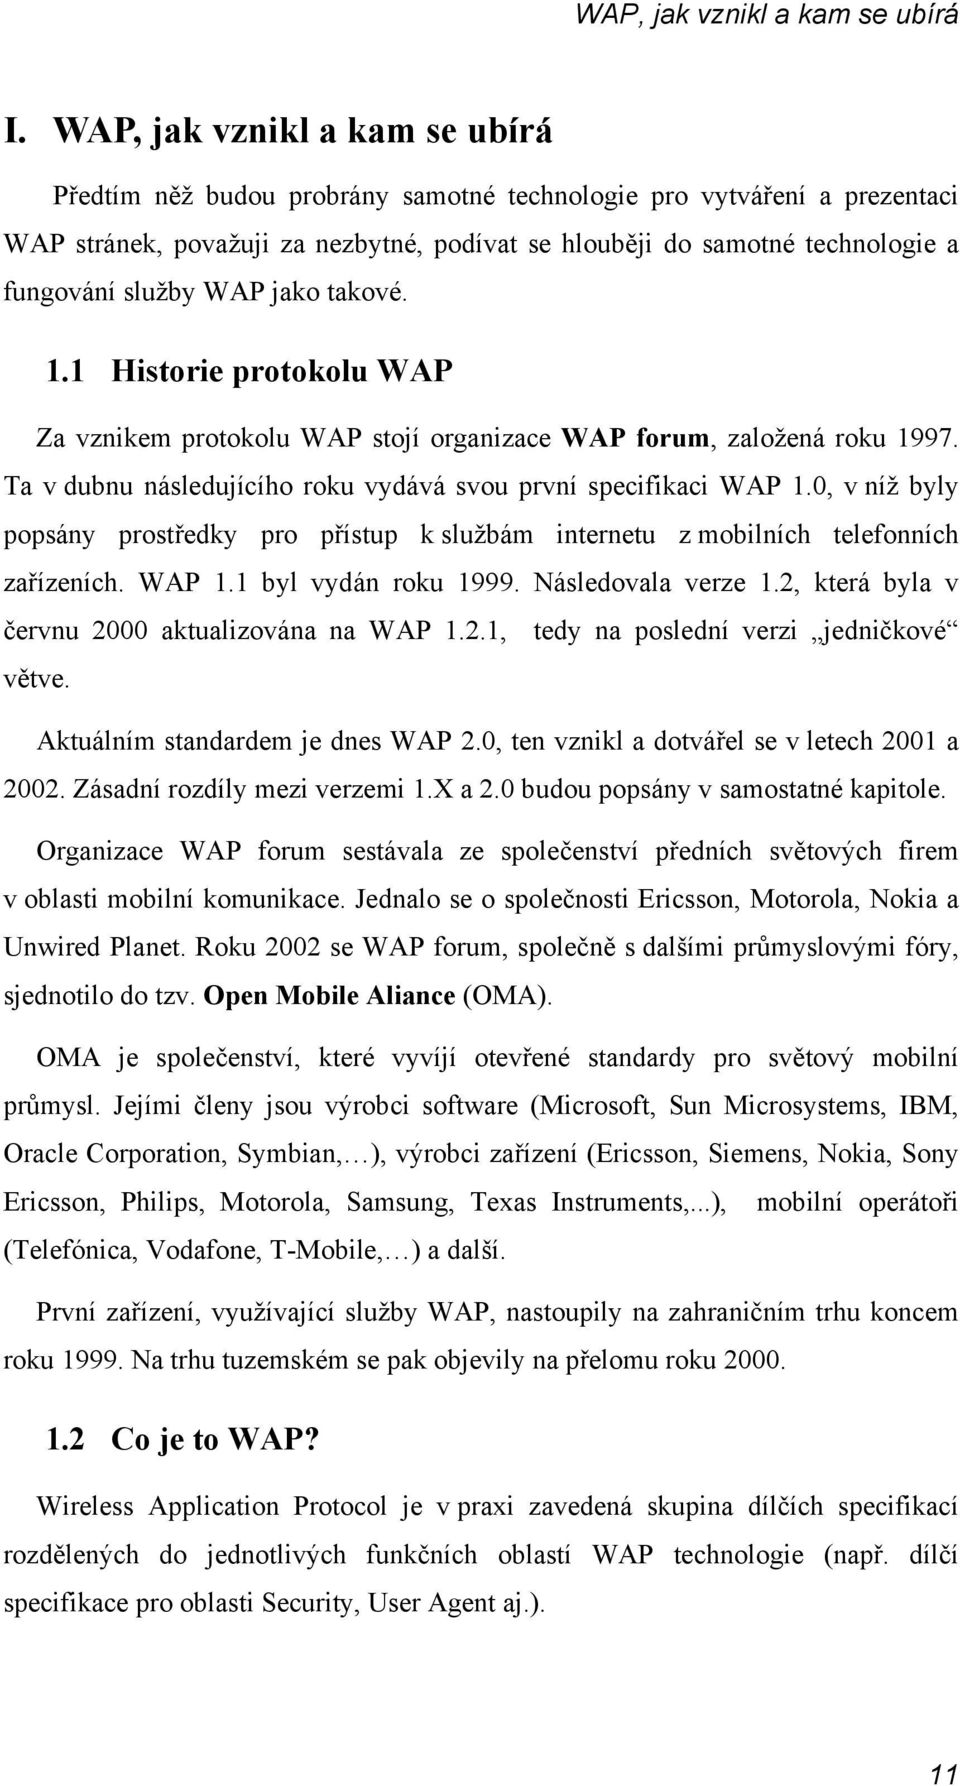 služby WAP jako takové. 1.1 Historie protokolu WAP Za vznikem protokolu WAP stojí organizace WAP forum, založená roku 1997. Ta v dubnu následujícího roku vydává svou první specifikaci WAP 1.